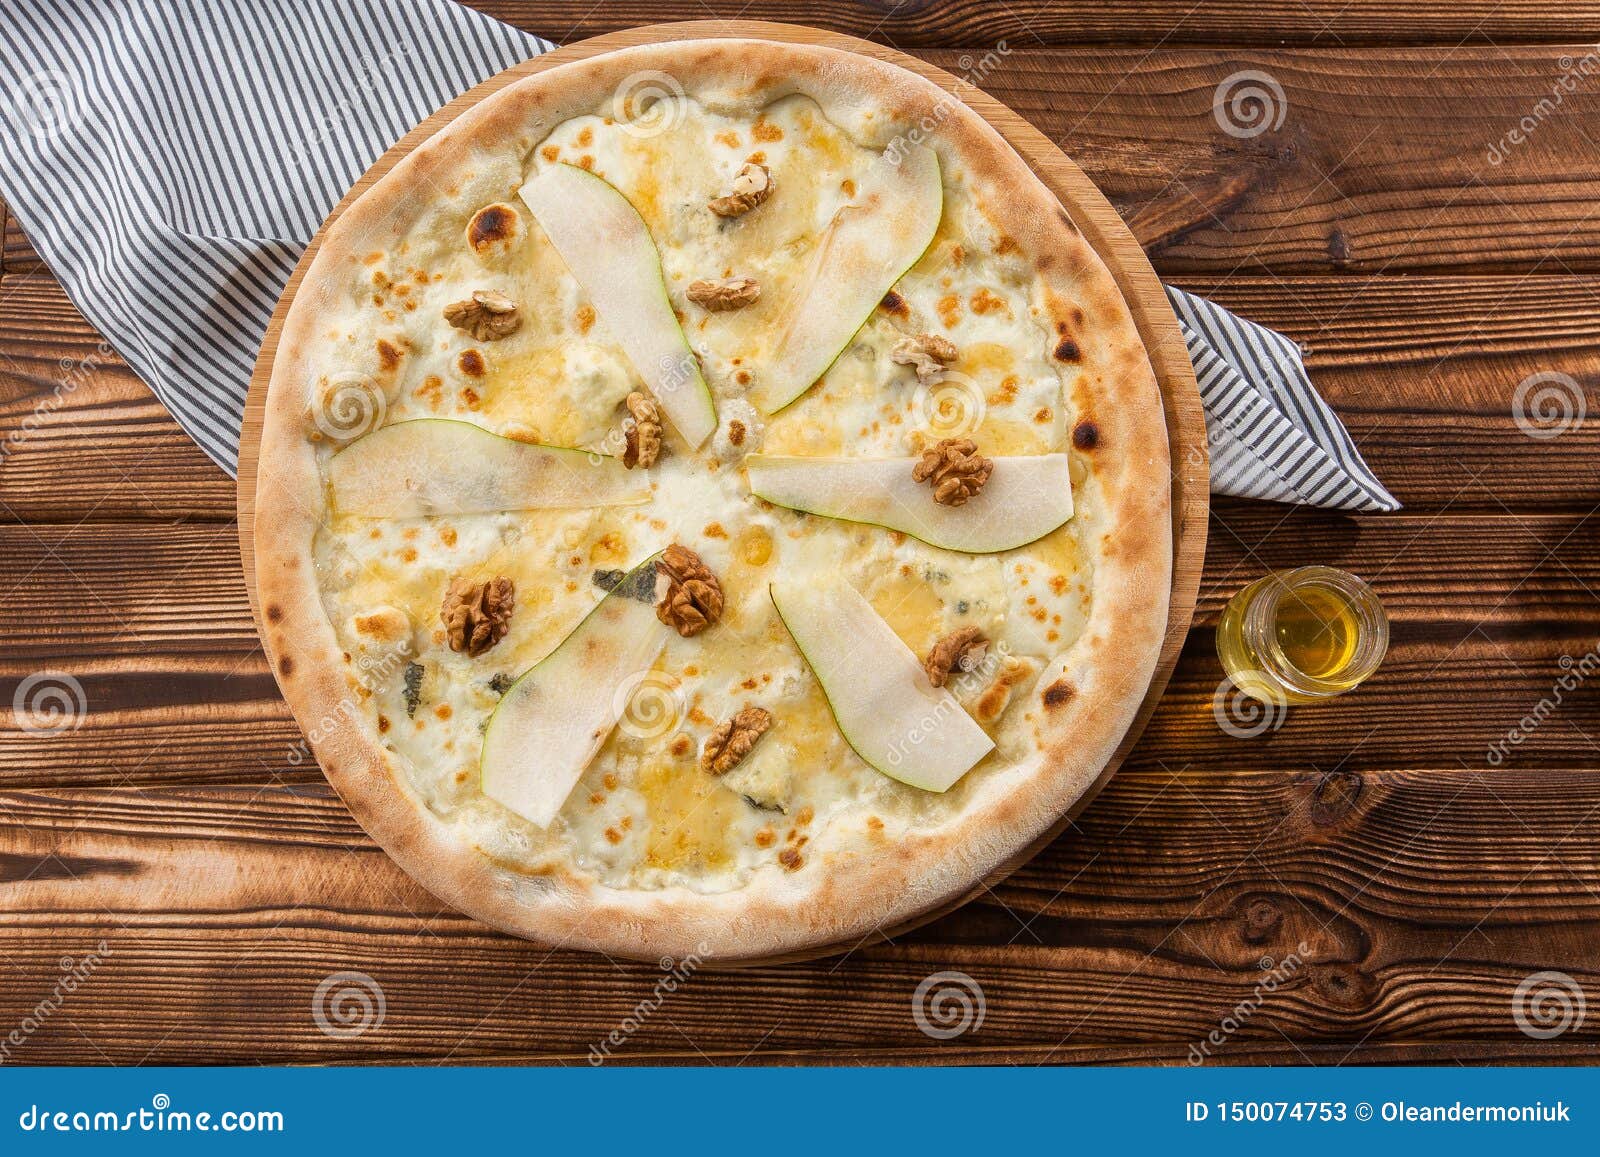 пицца с горгонзолой и грушей рецепт юлии высоцкой фото 65